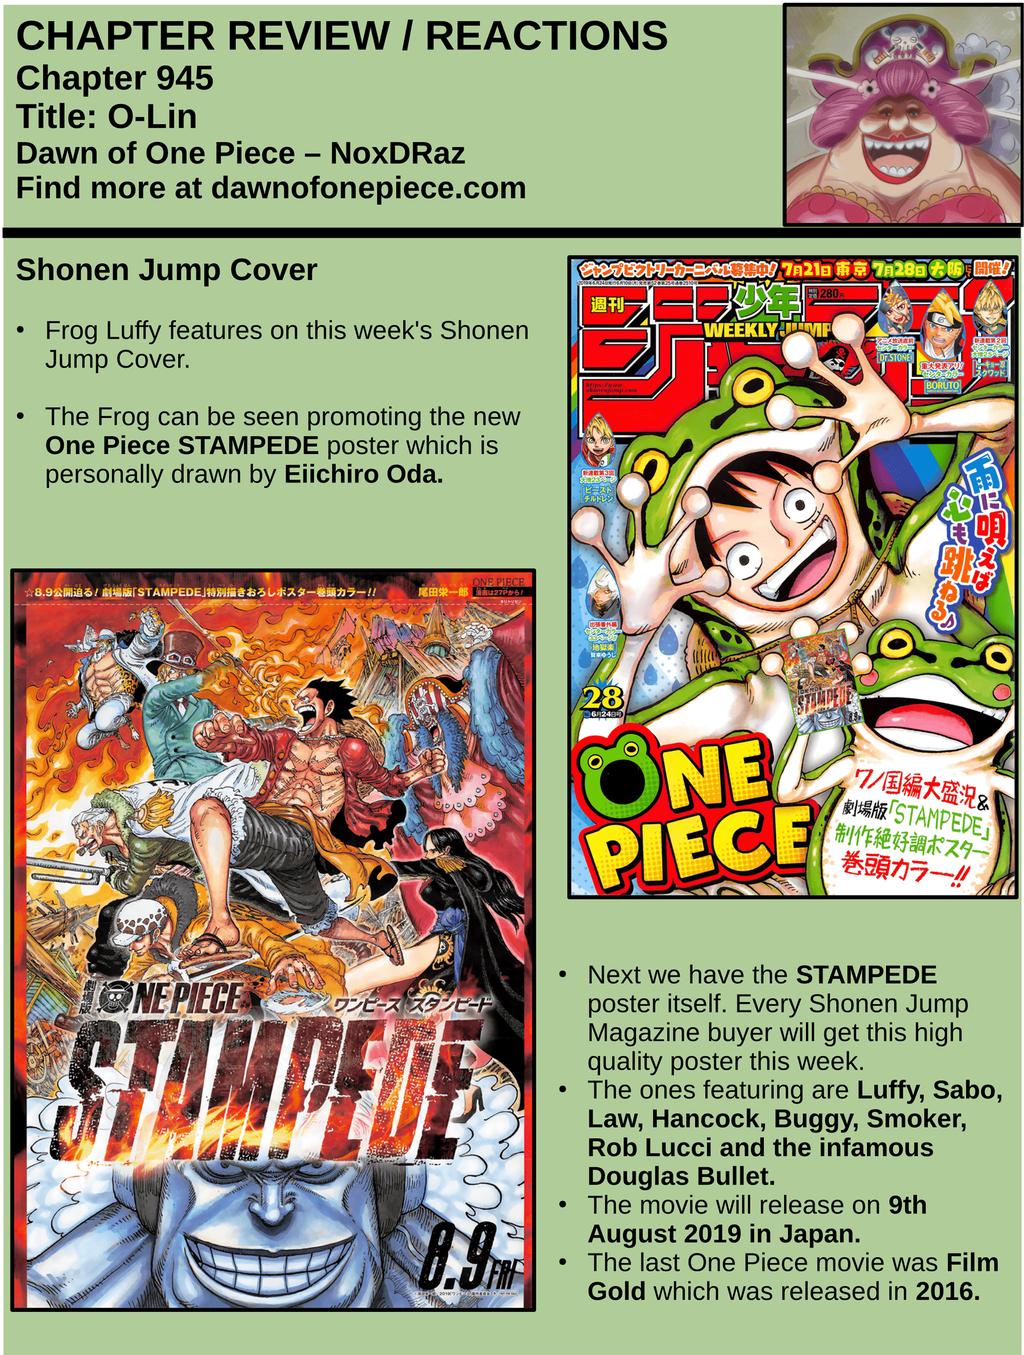 ワノ国 で One Piece Chapter 945 Review T Co Cydlmq5vdx T Co Uj4kcztchj Twitter